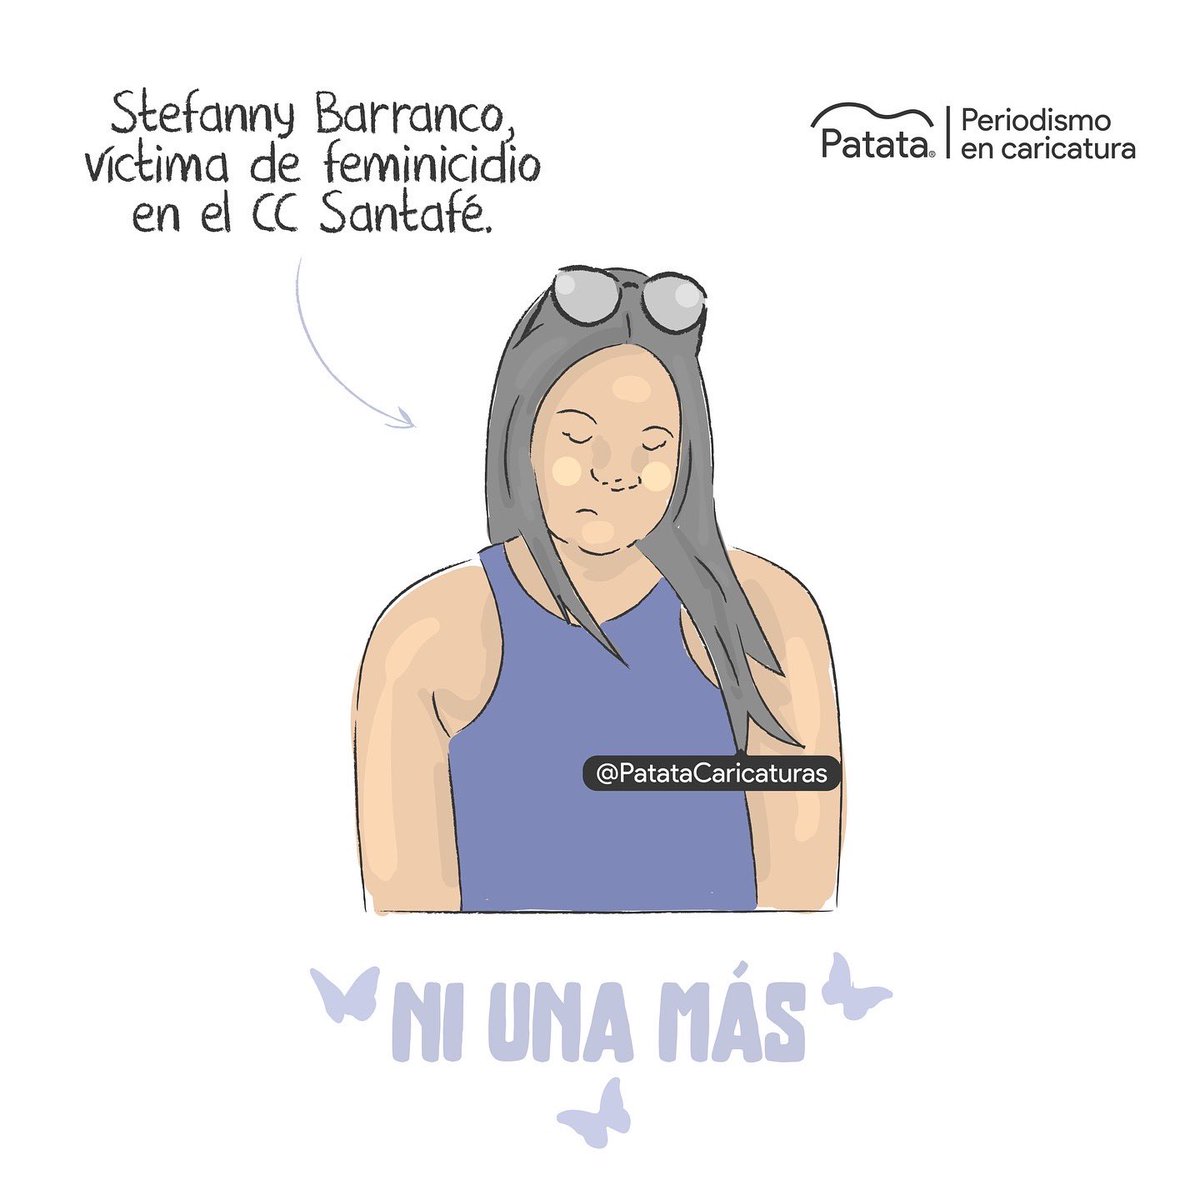 ✊🏽🦋 Justicia para Steffany Barranco, victima de feminicidio en el CC Santafé. 
🧵